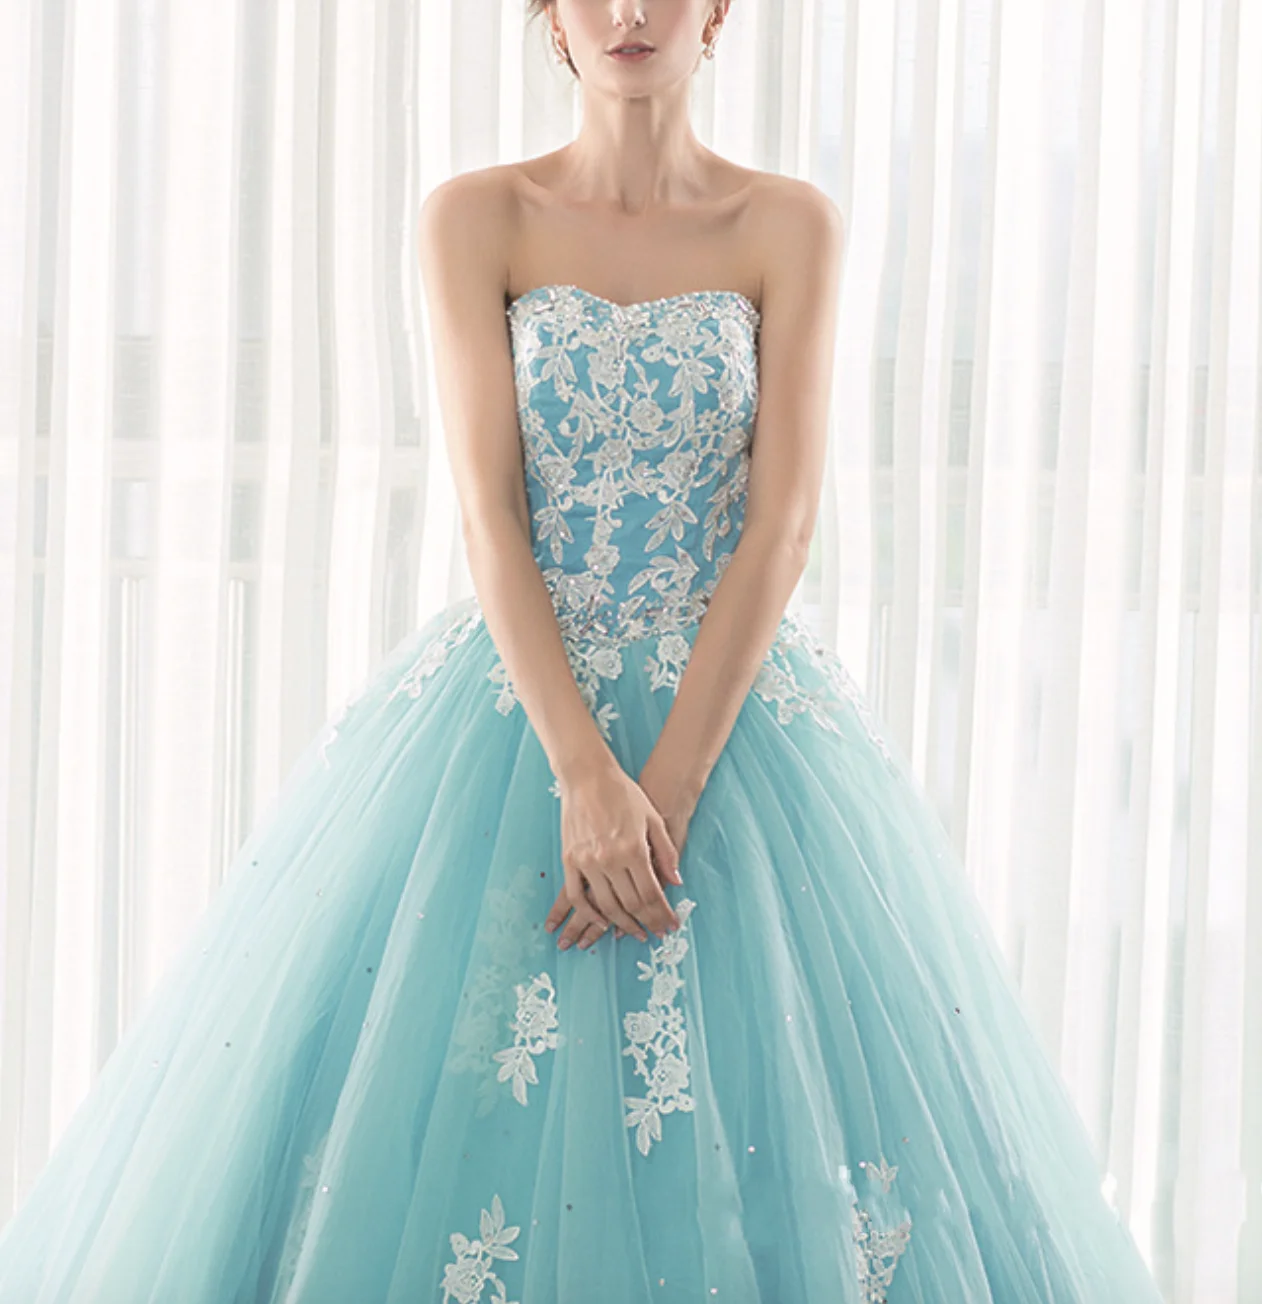 JIERUIZE светильник небесно-голубое свадебное платье без бретелек без рукавов на шнуровке с аппликацией свадебное платье принцессы